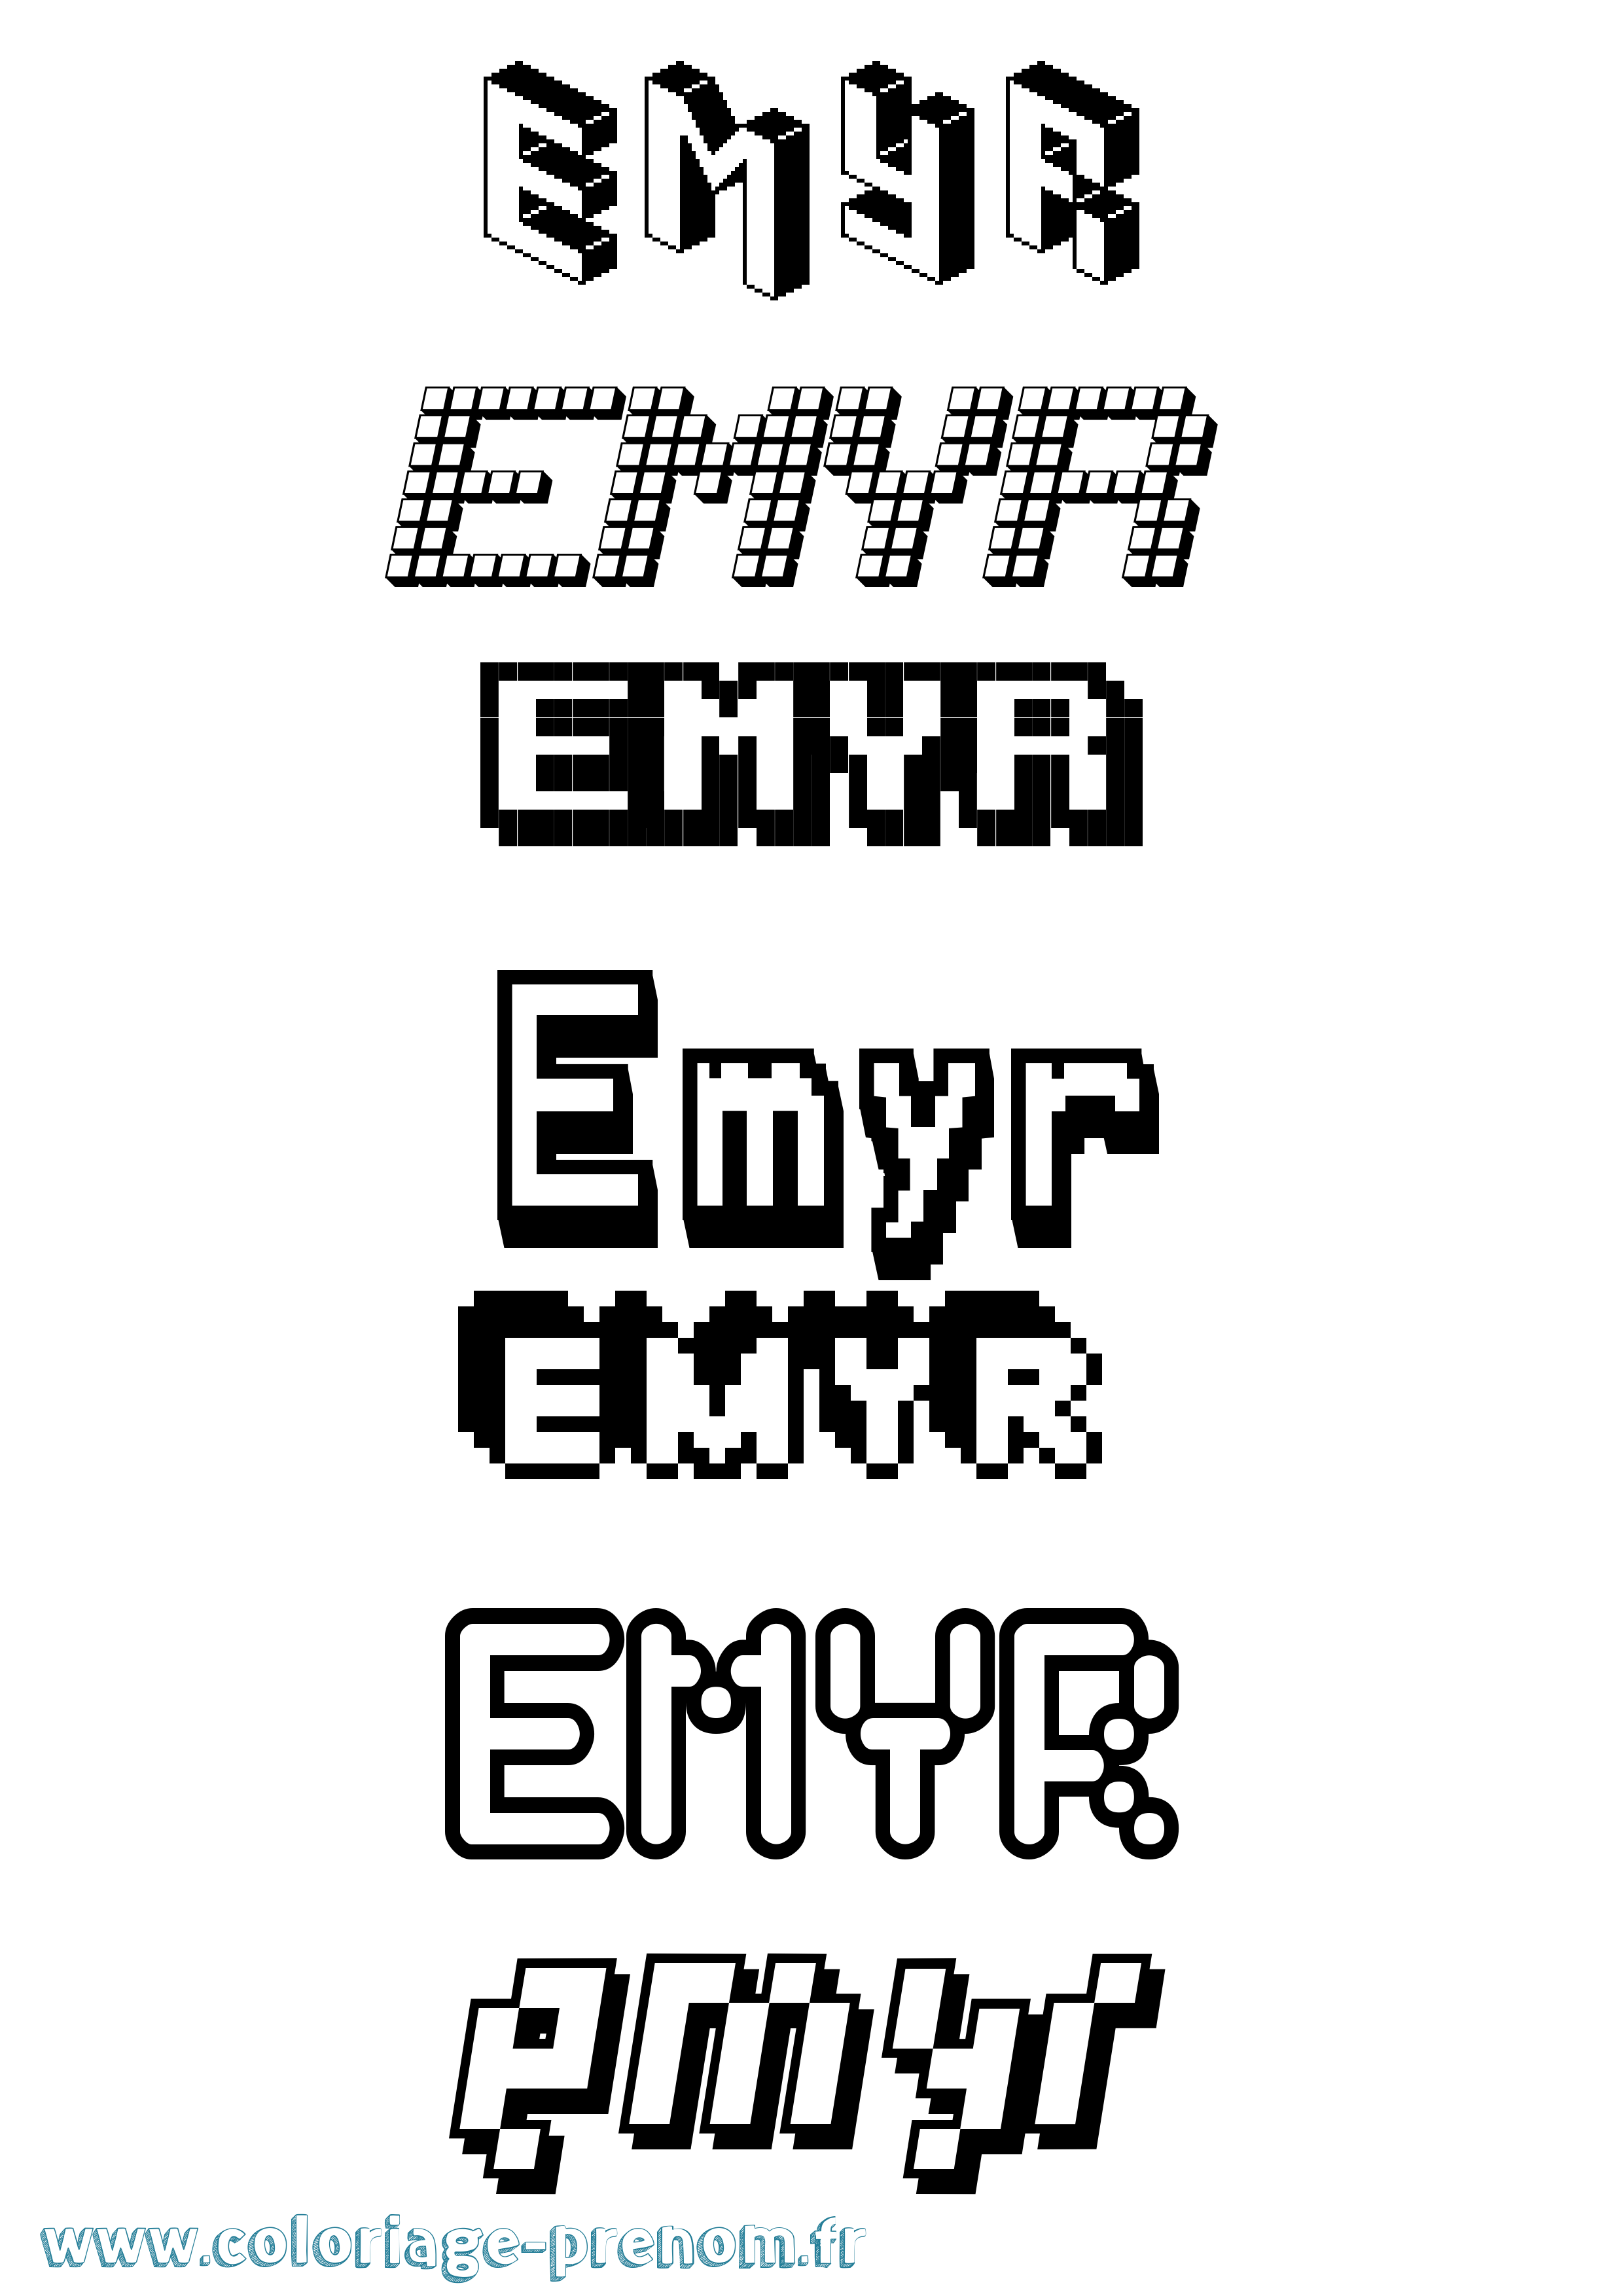 Coloriage prénom Emyr Pixel